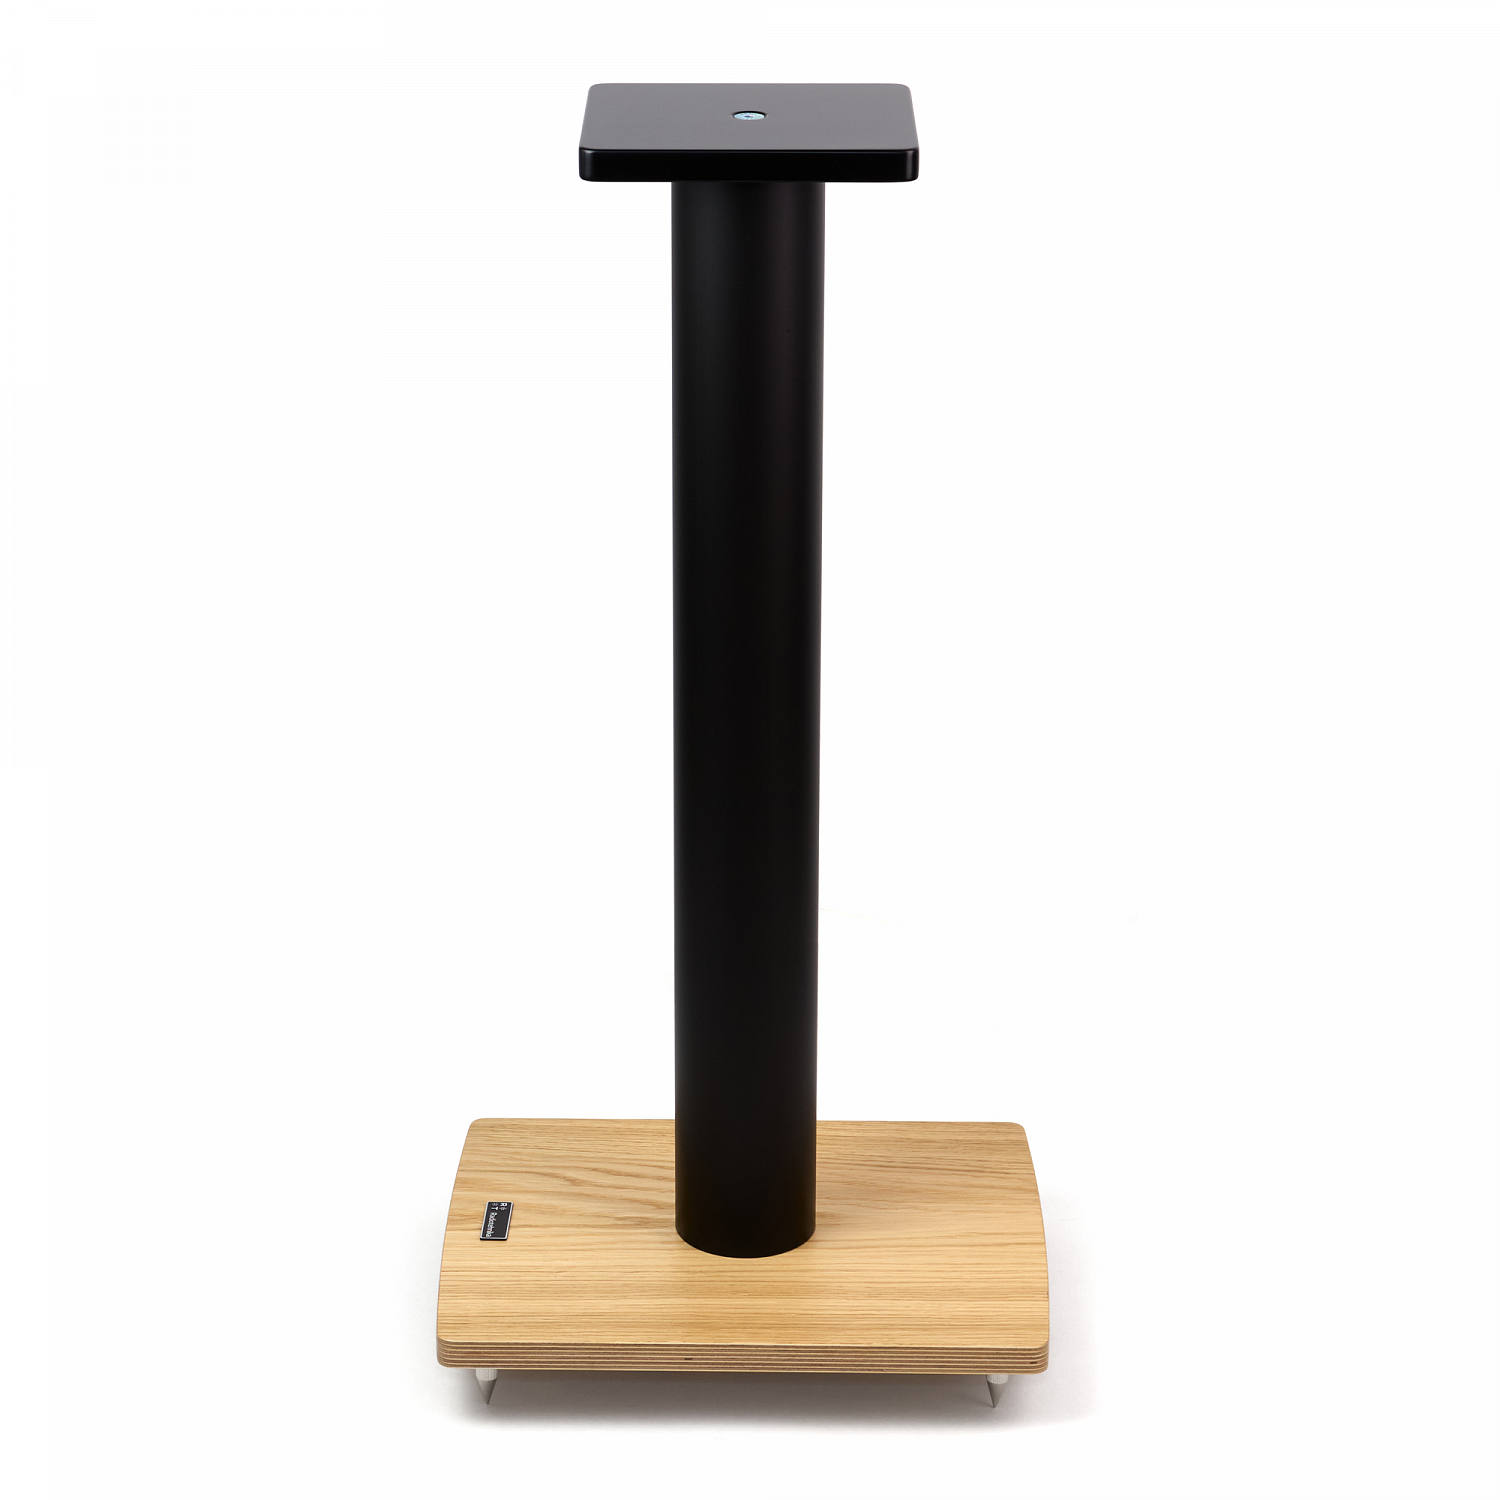 Radiotehnika T7B Black/Wood стойка для акустики, цвет черный/натуральное дерево